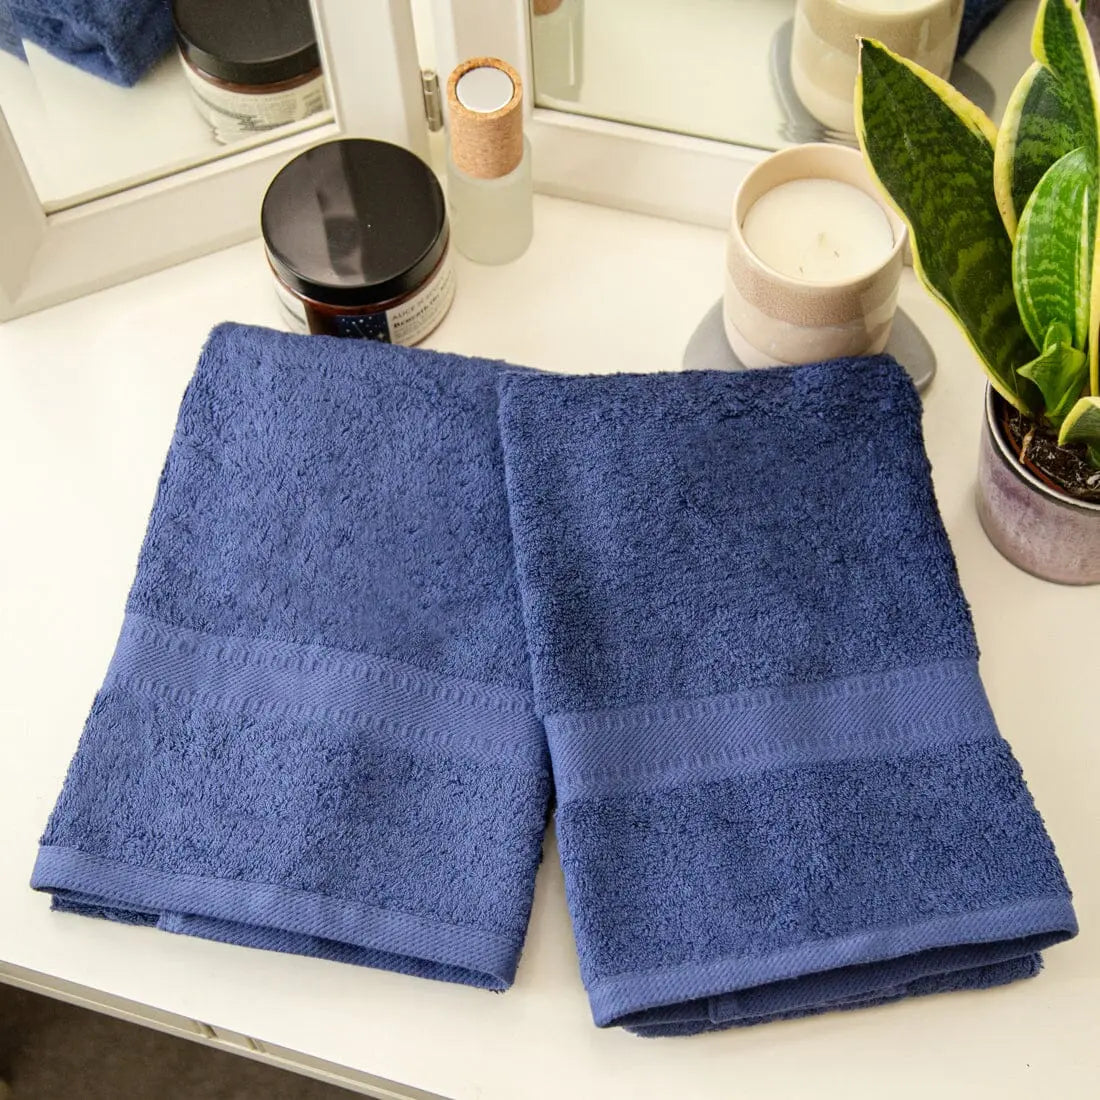 pair of navy blue towels